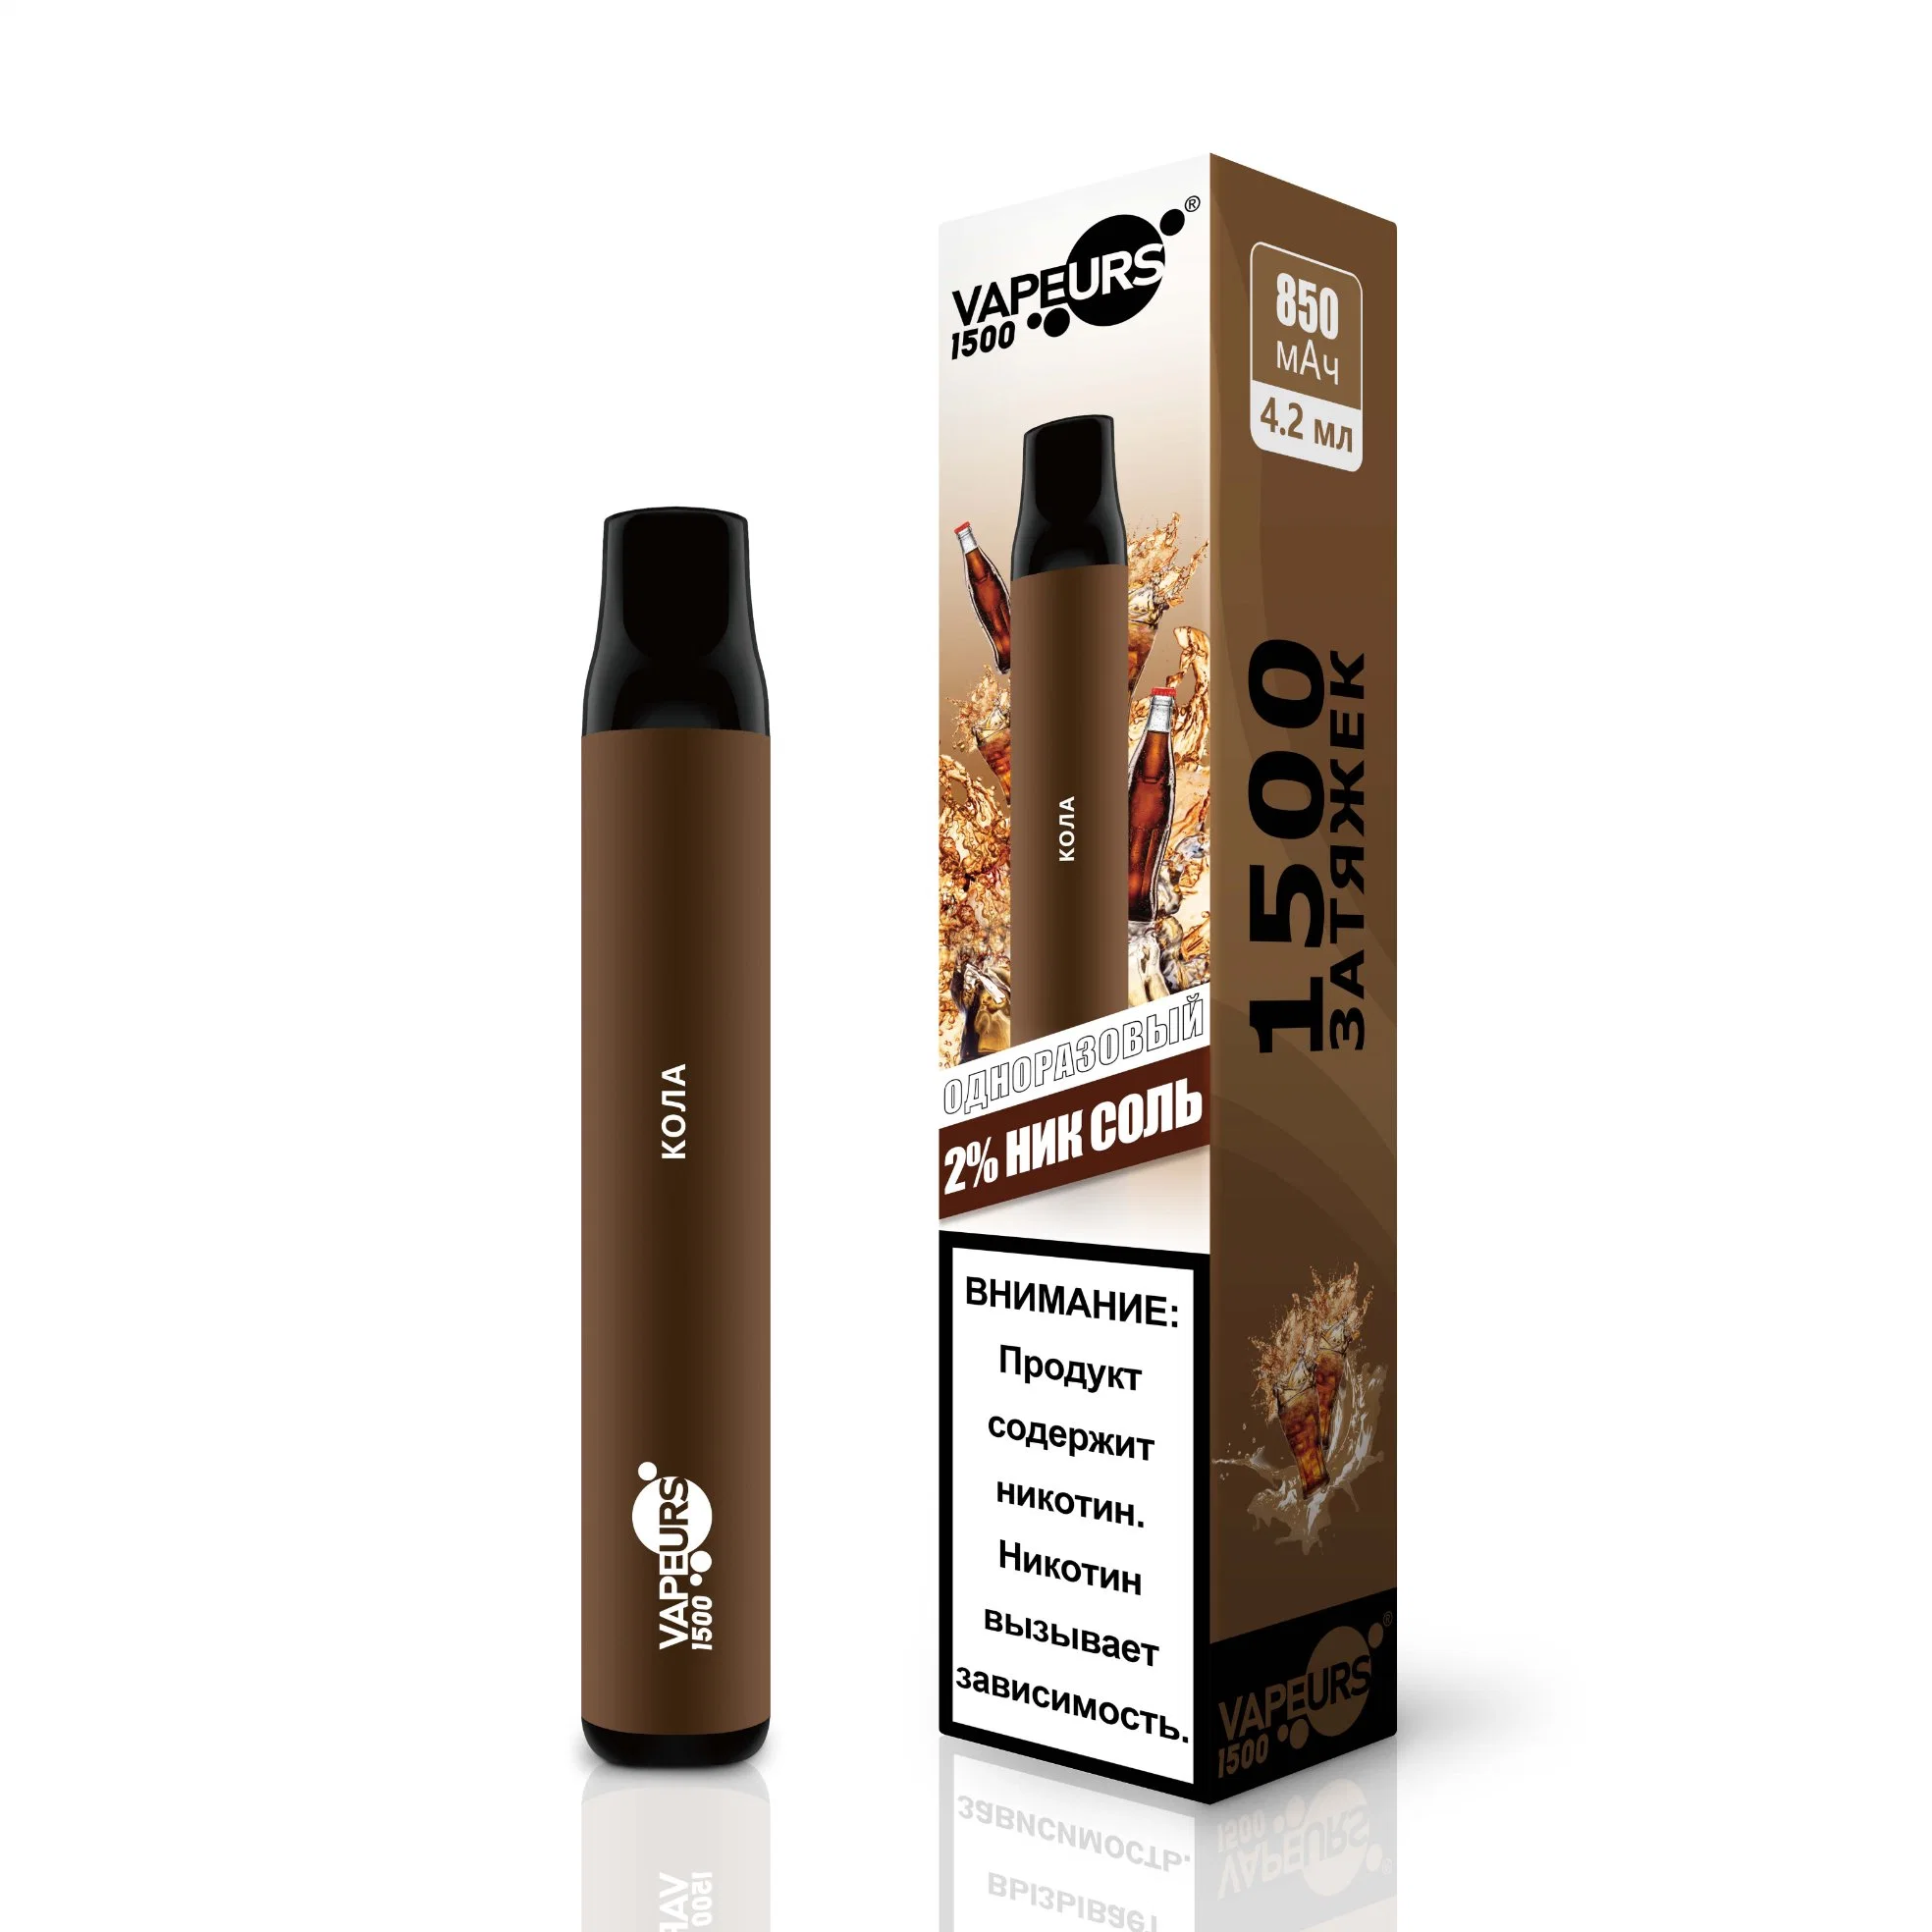 2023 E Prix de gros de fumée Cheap Vaporisateur 500 1000 1500 bouffée Vape stylo rechargeable jetable saveur Mini cigarette stylo électronique narguilé